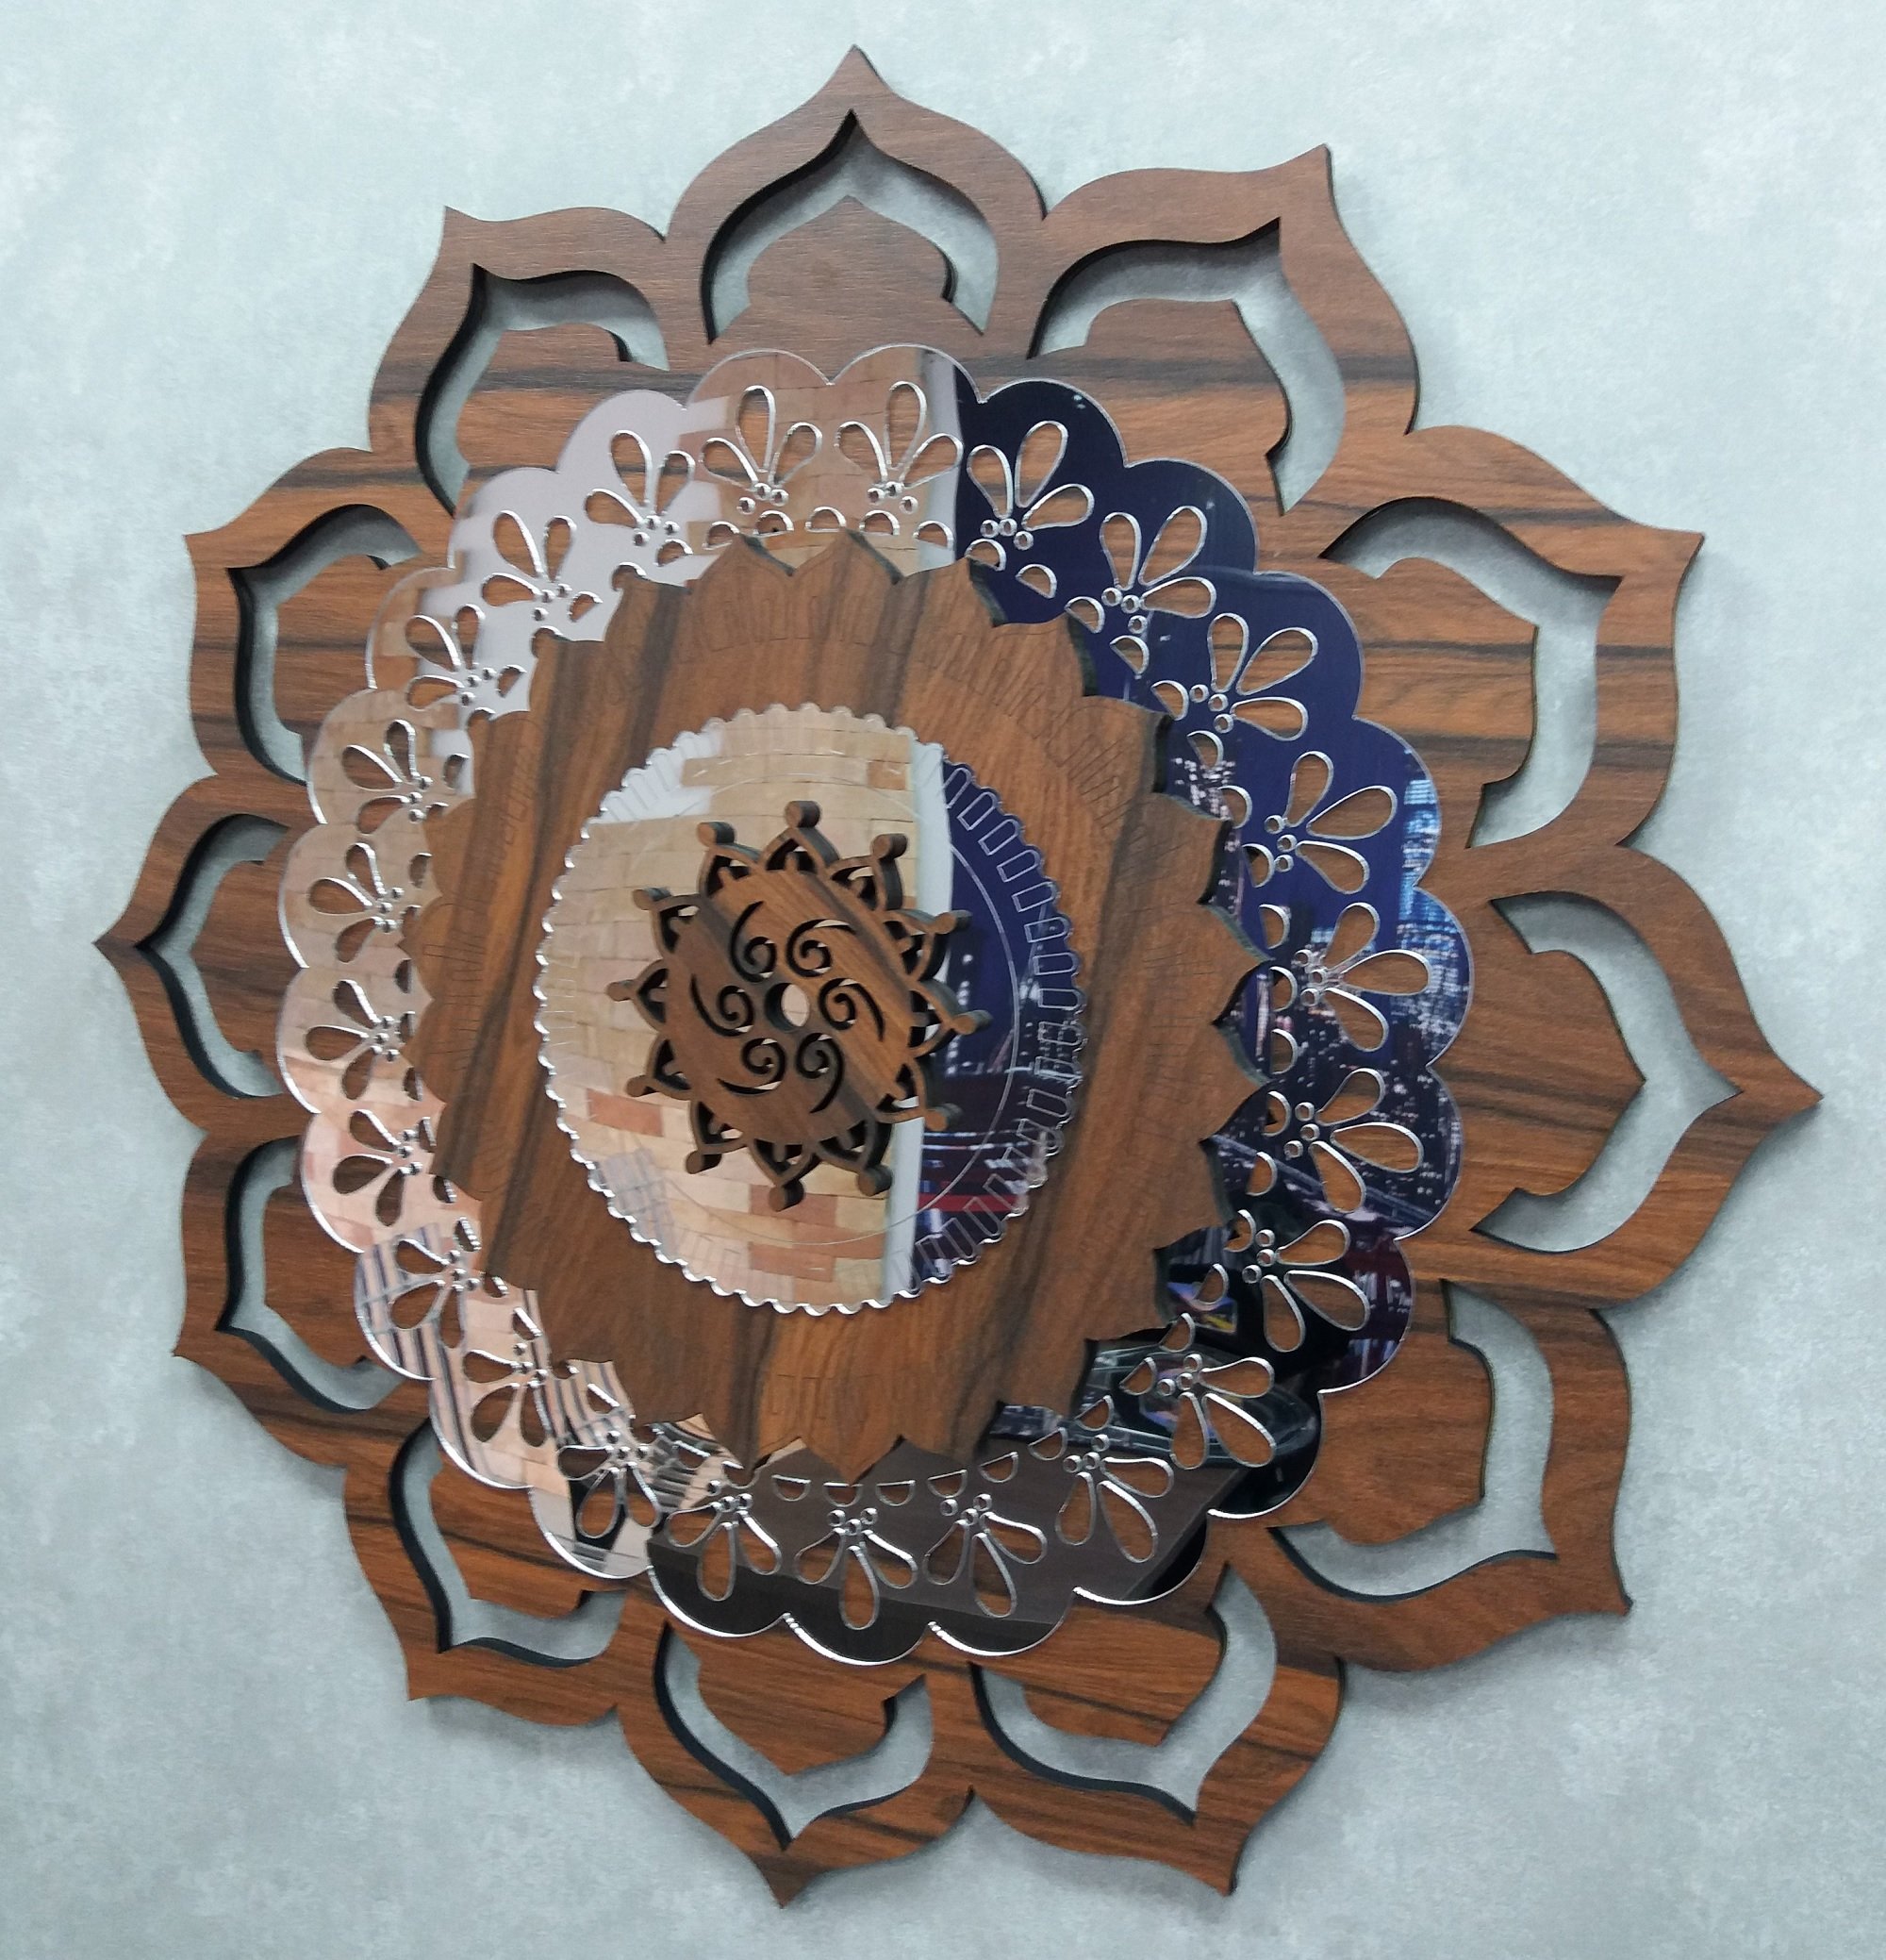 Quadro Mandala Decorativa em Madeira 65 cm 38108:Marrom - 8